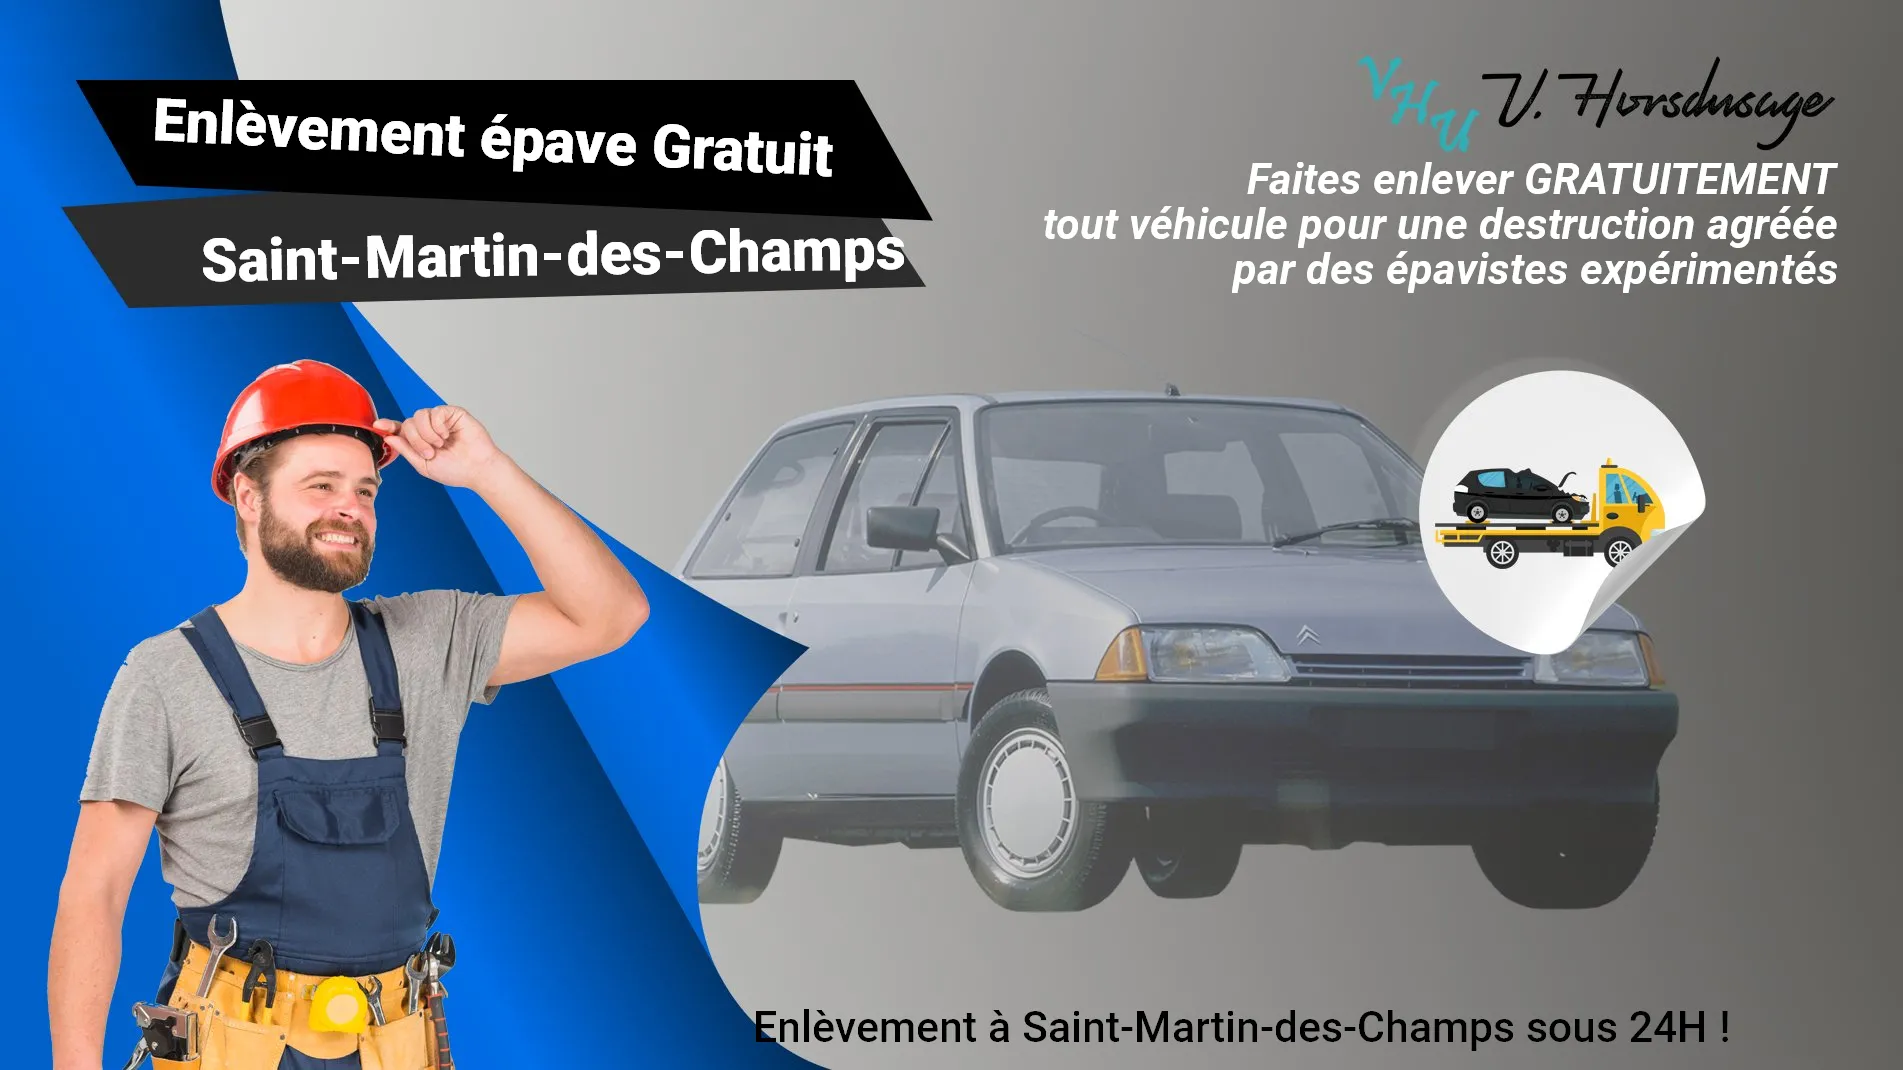 Pour un enlèvement gratuit à Saint-Martin-des-Champs, contactez nos épavistes agréé VHU